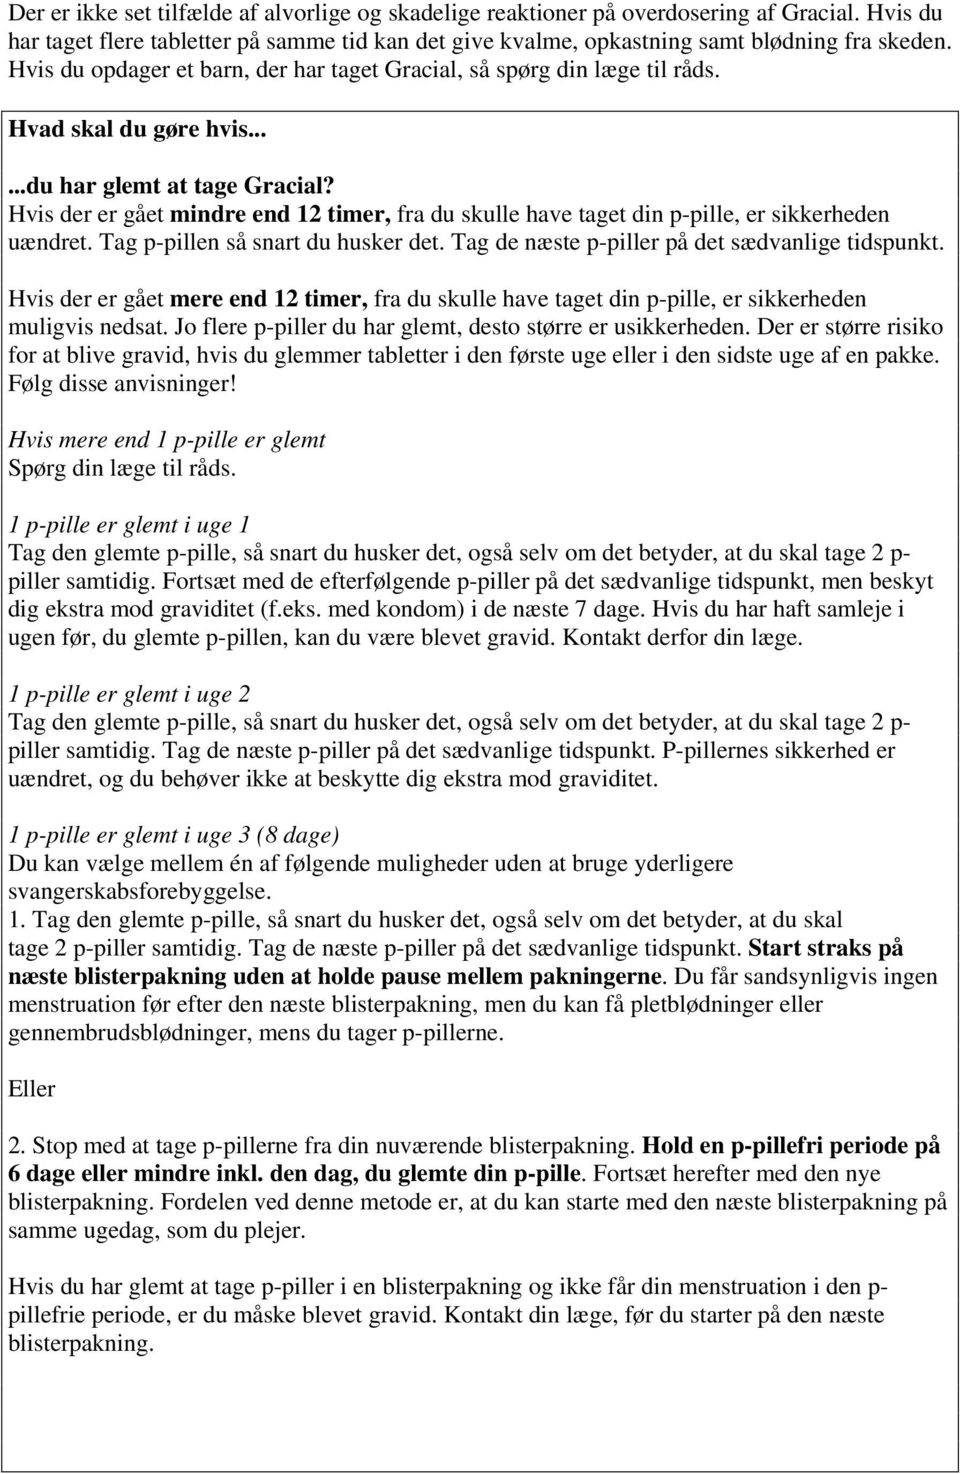 INDLÆGSSEDDEL: INFORMATION TIL BRUGEREN - PDF Free Download